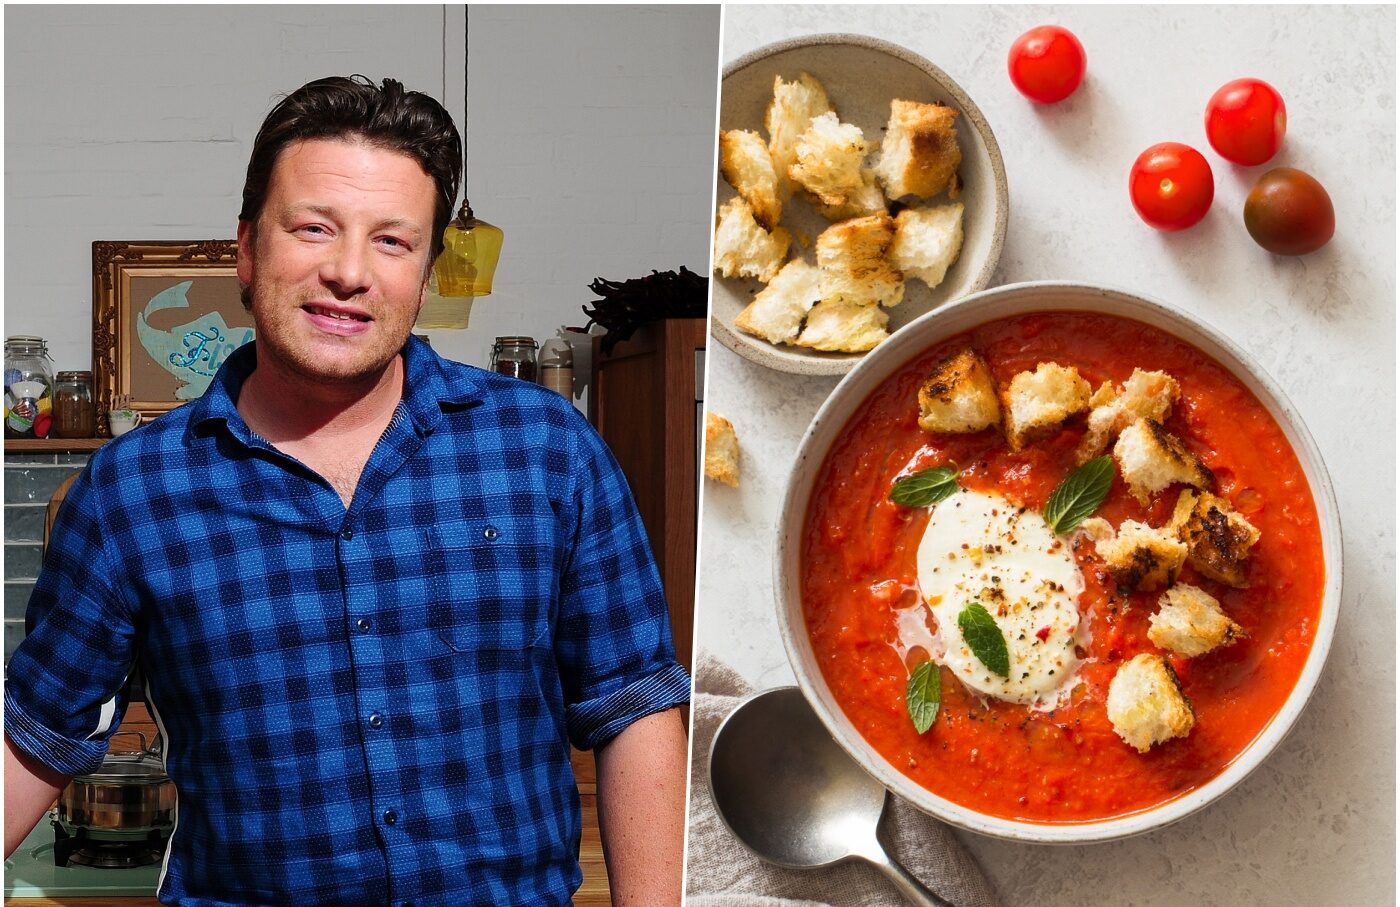 Juha od rajčice prema receptu Jamieja Olivera